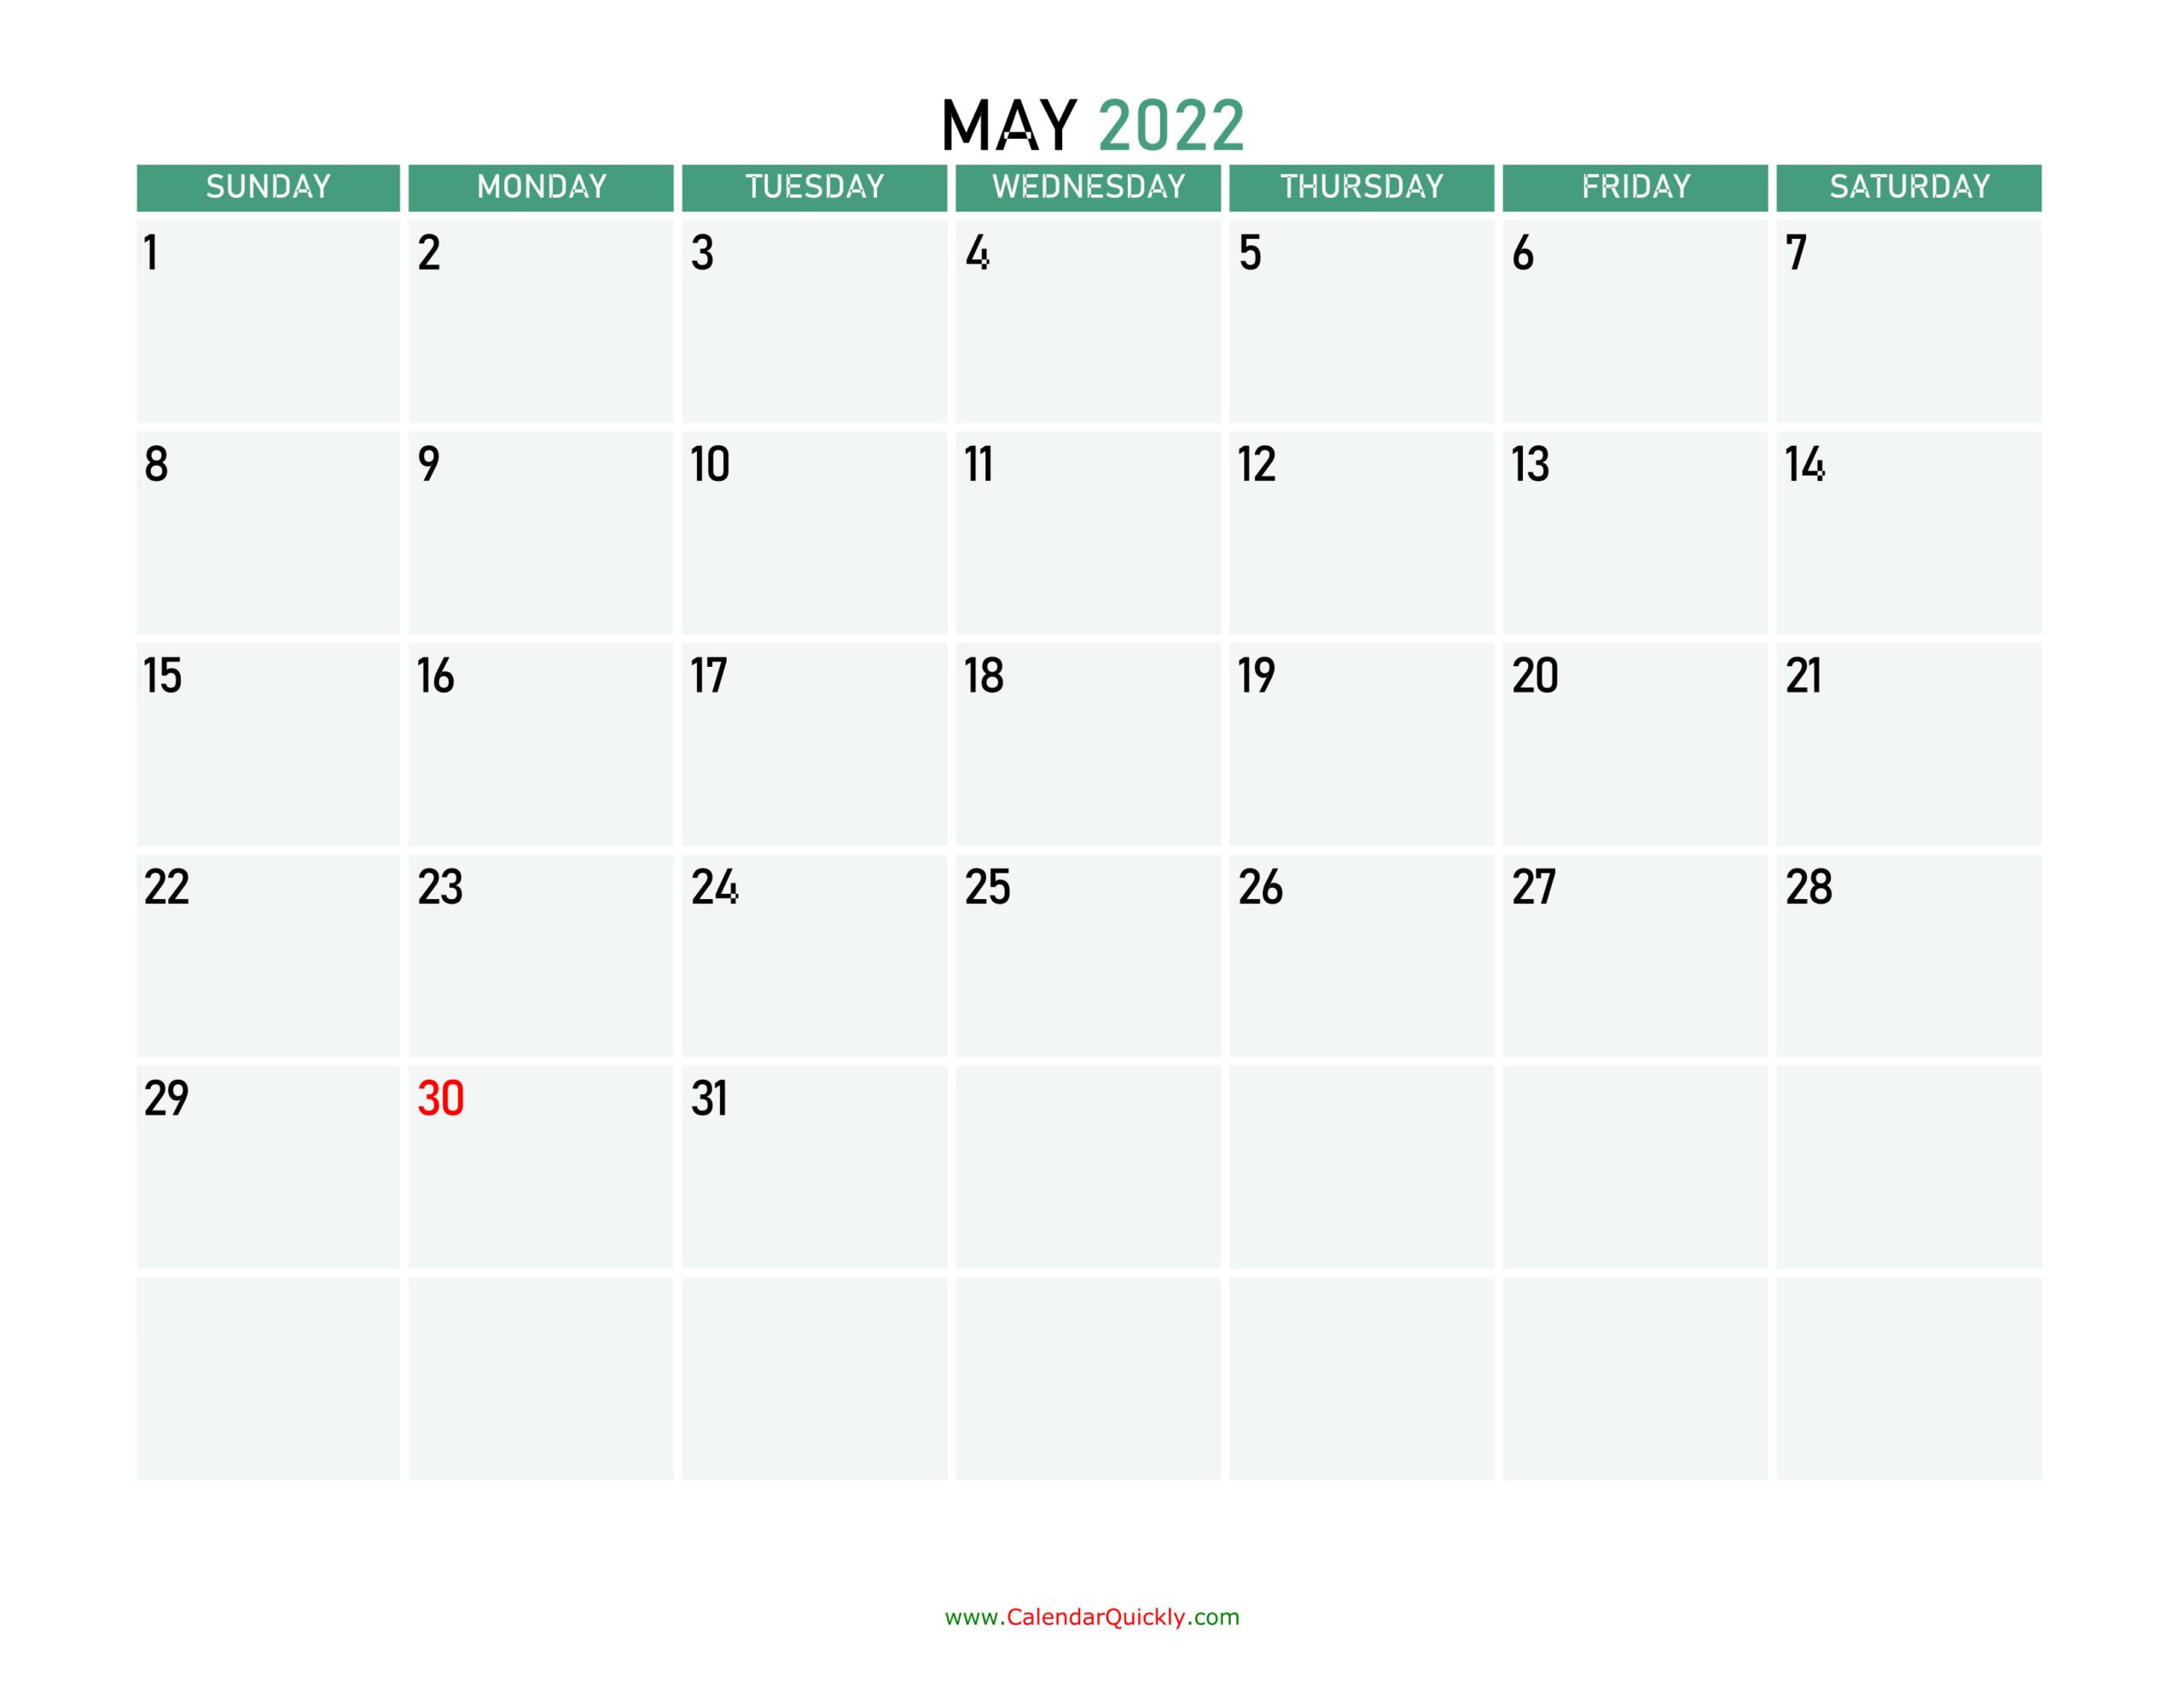 May 2022 Printable Calendar | Calendar Quickly